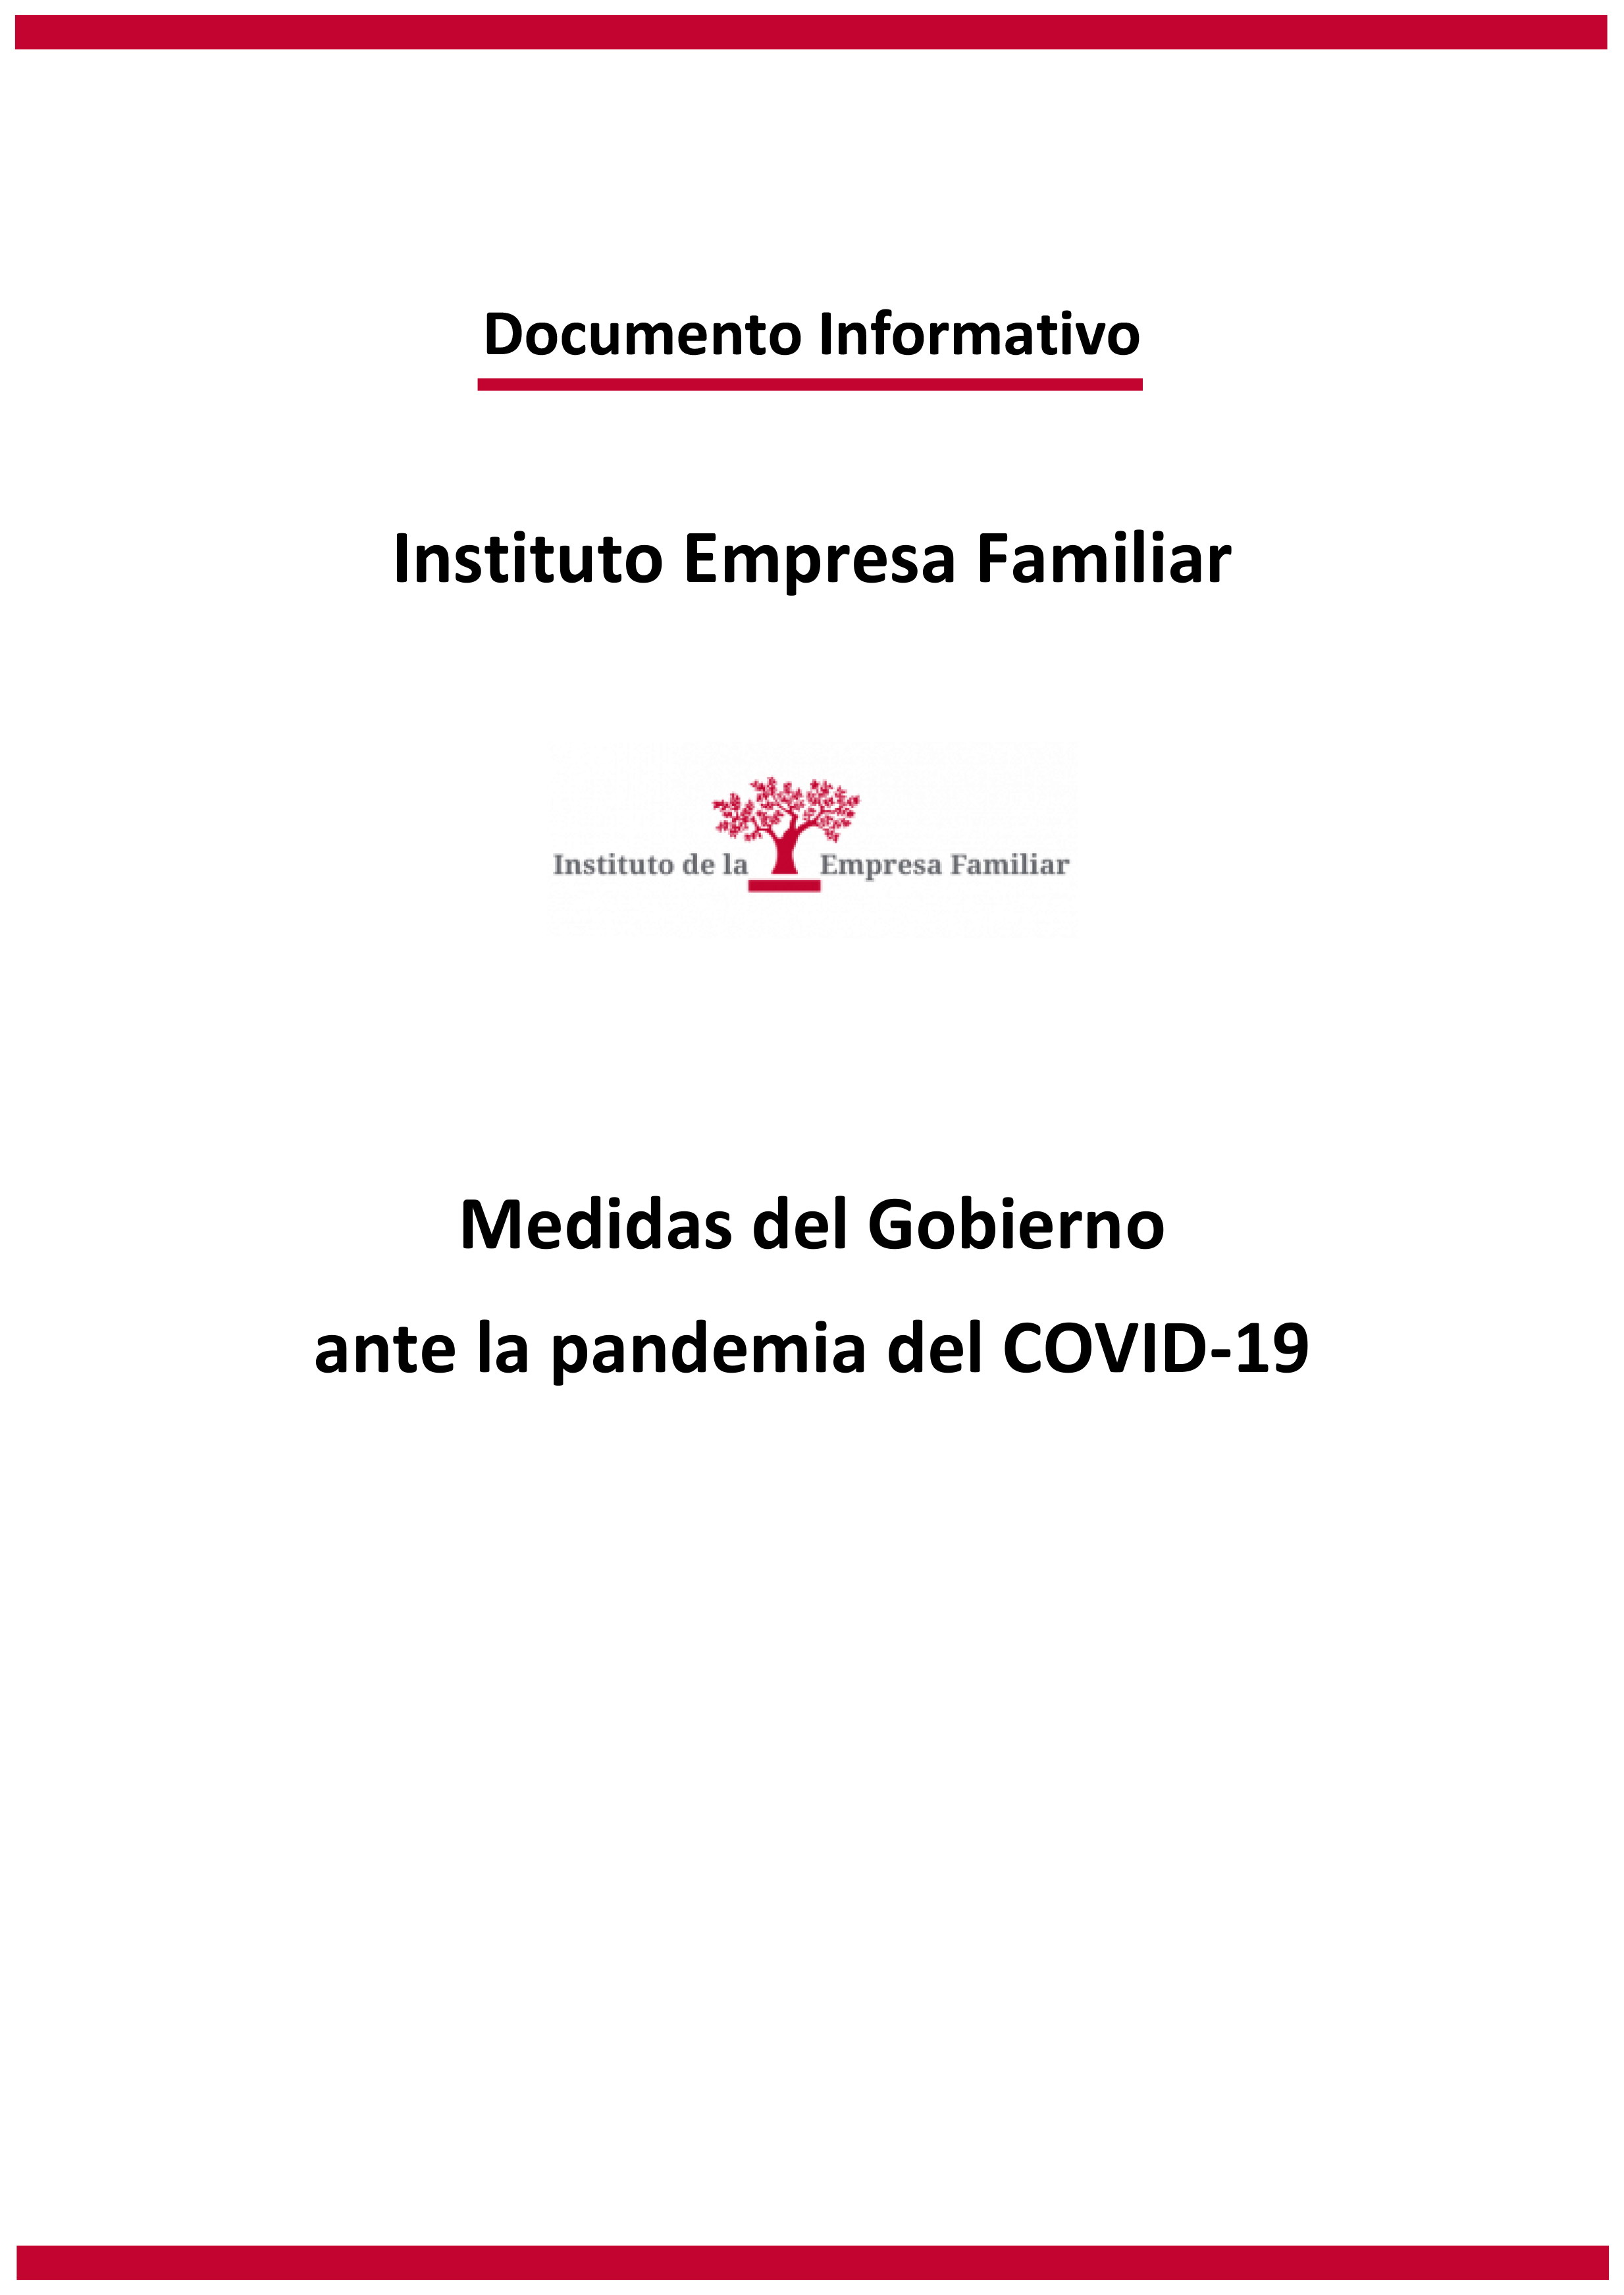 Mesures del Govern davant la pandèmia de la COVID-19